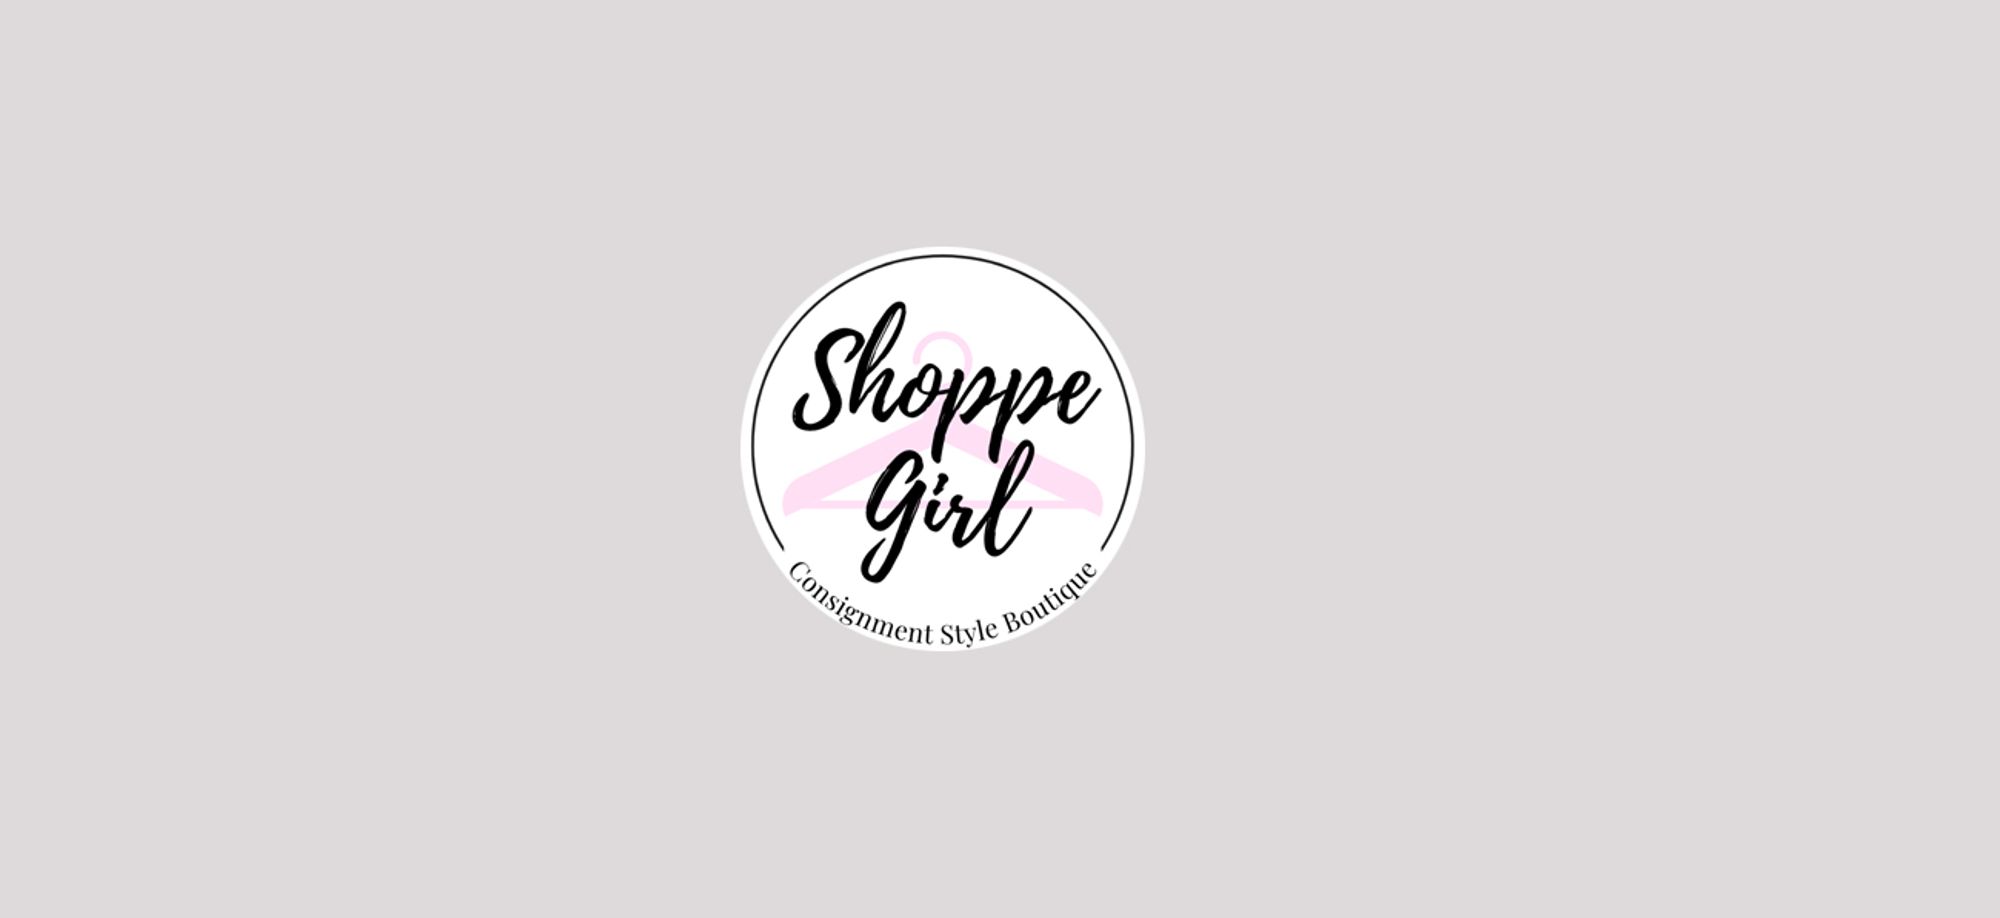 Shoppe Girl